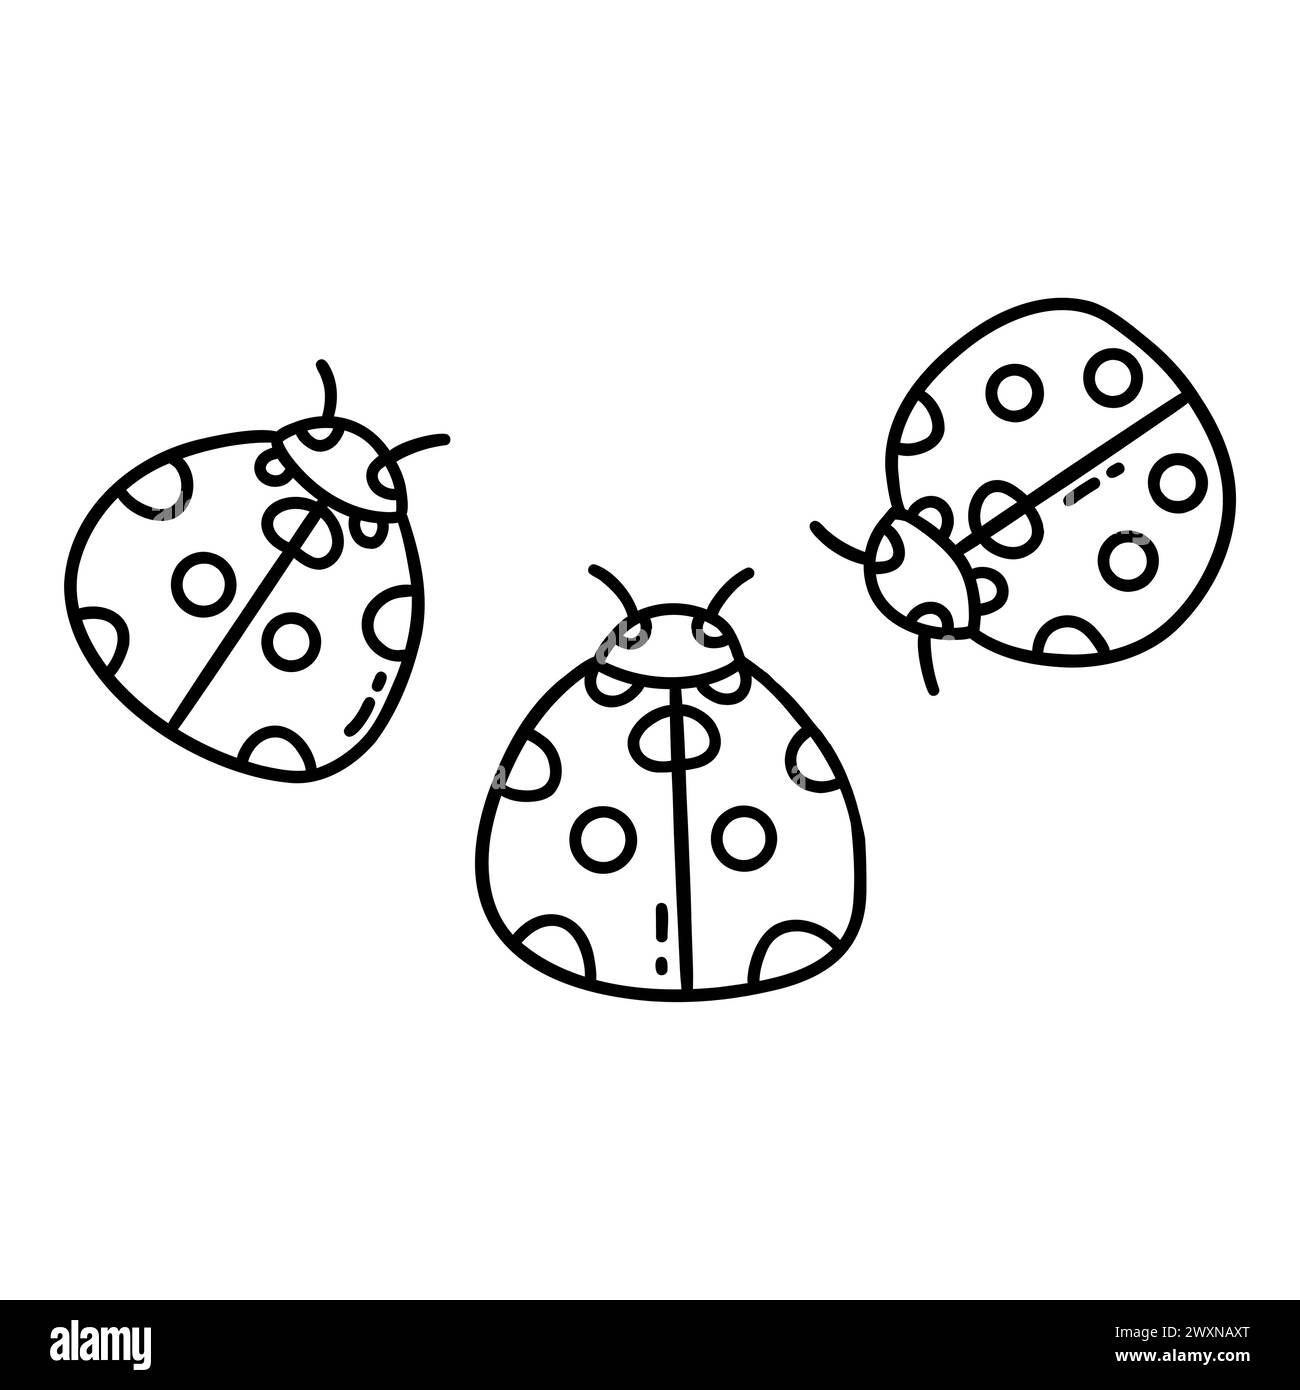 Tre ladybug. Insetti carini con pois. Primavera ed estate. Illustrazione vettoriale isolata in bianco e nero disegnata a mano. Clip da colorare Illustrazione Vettoriale